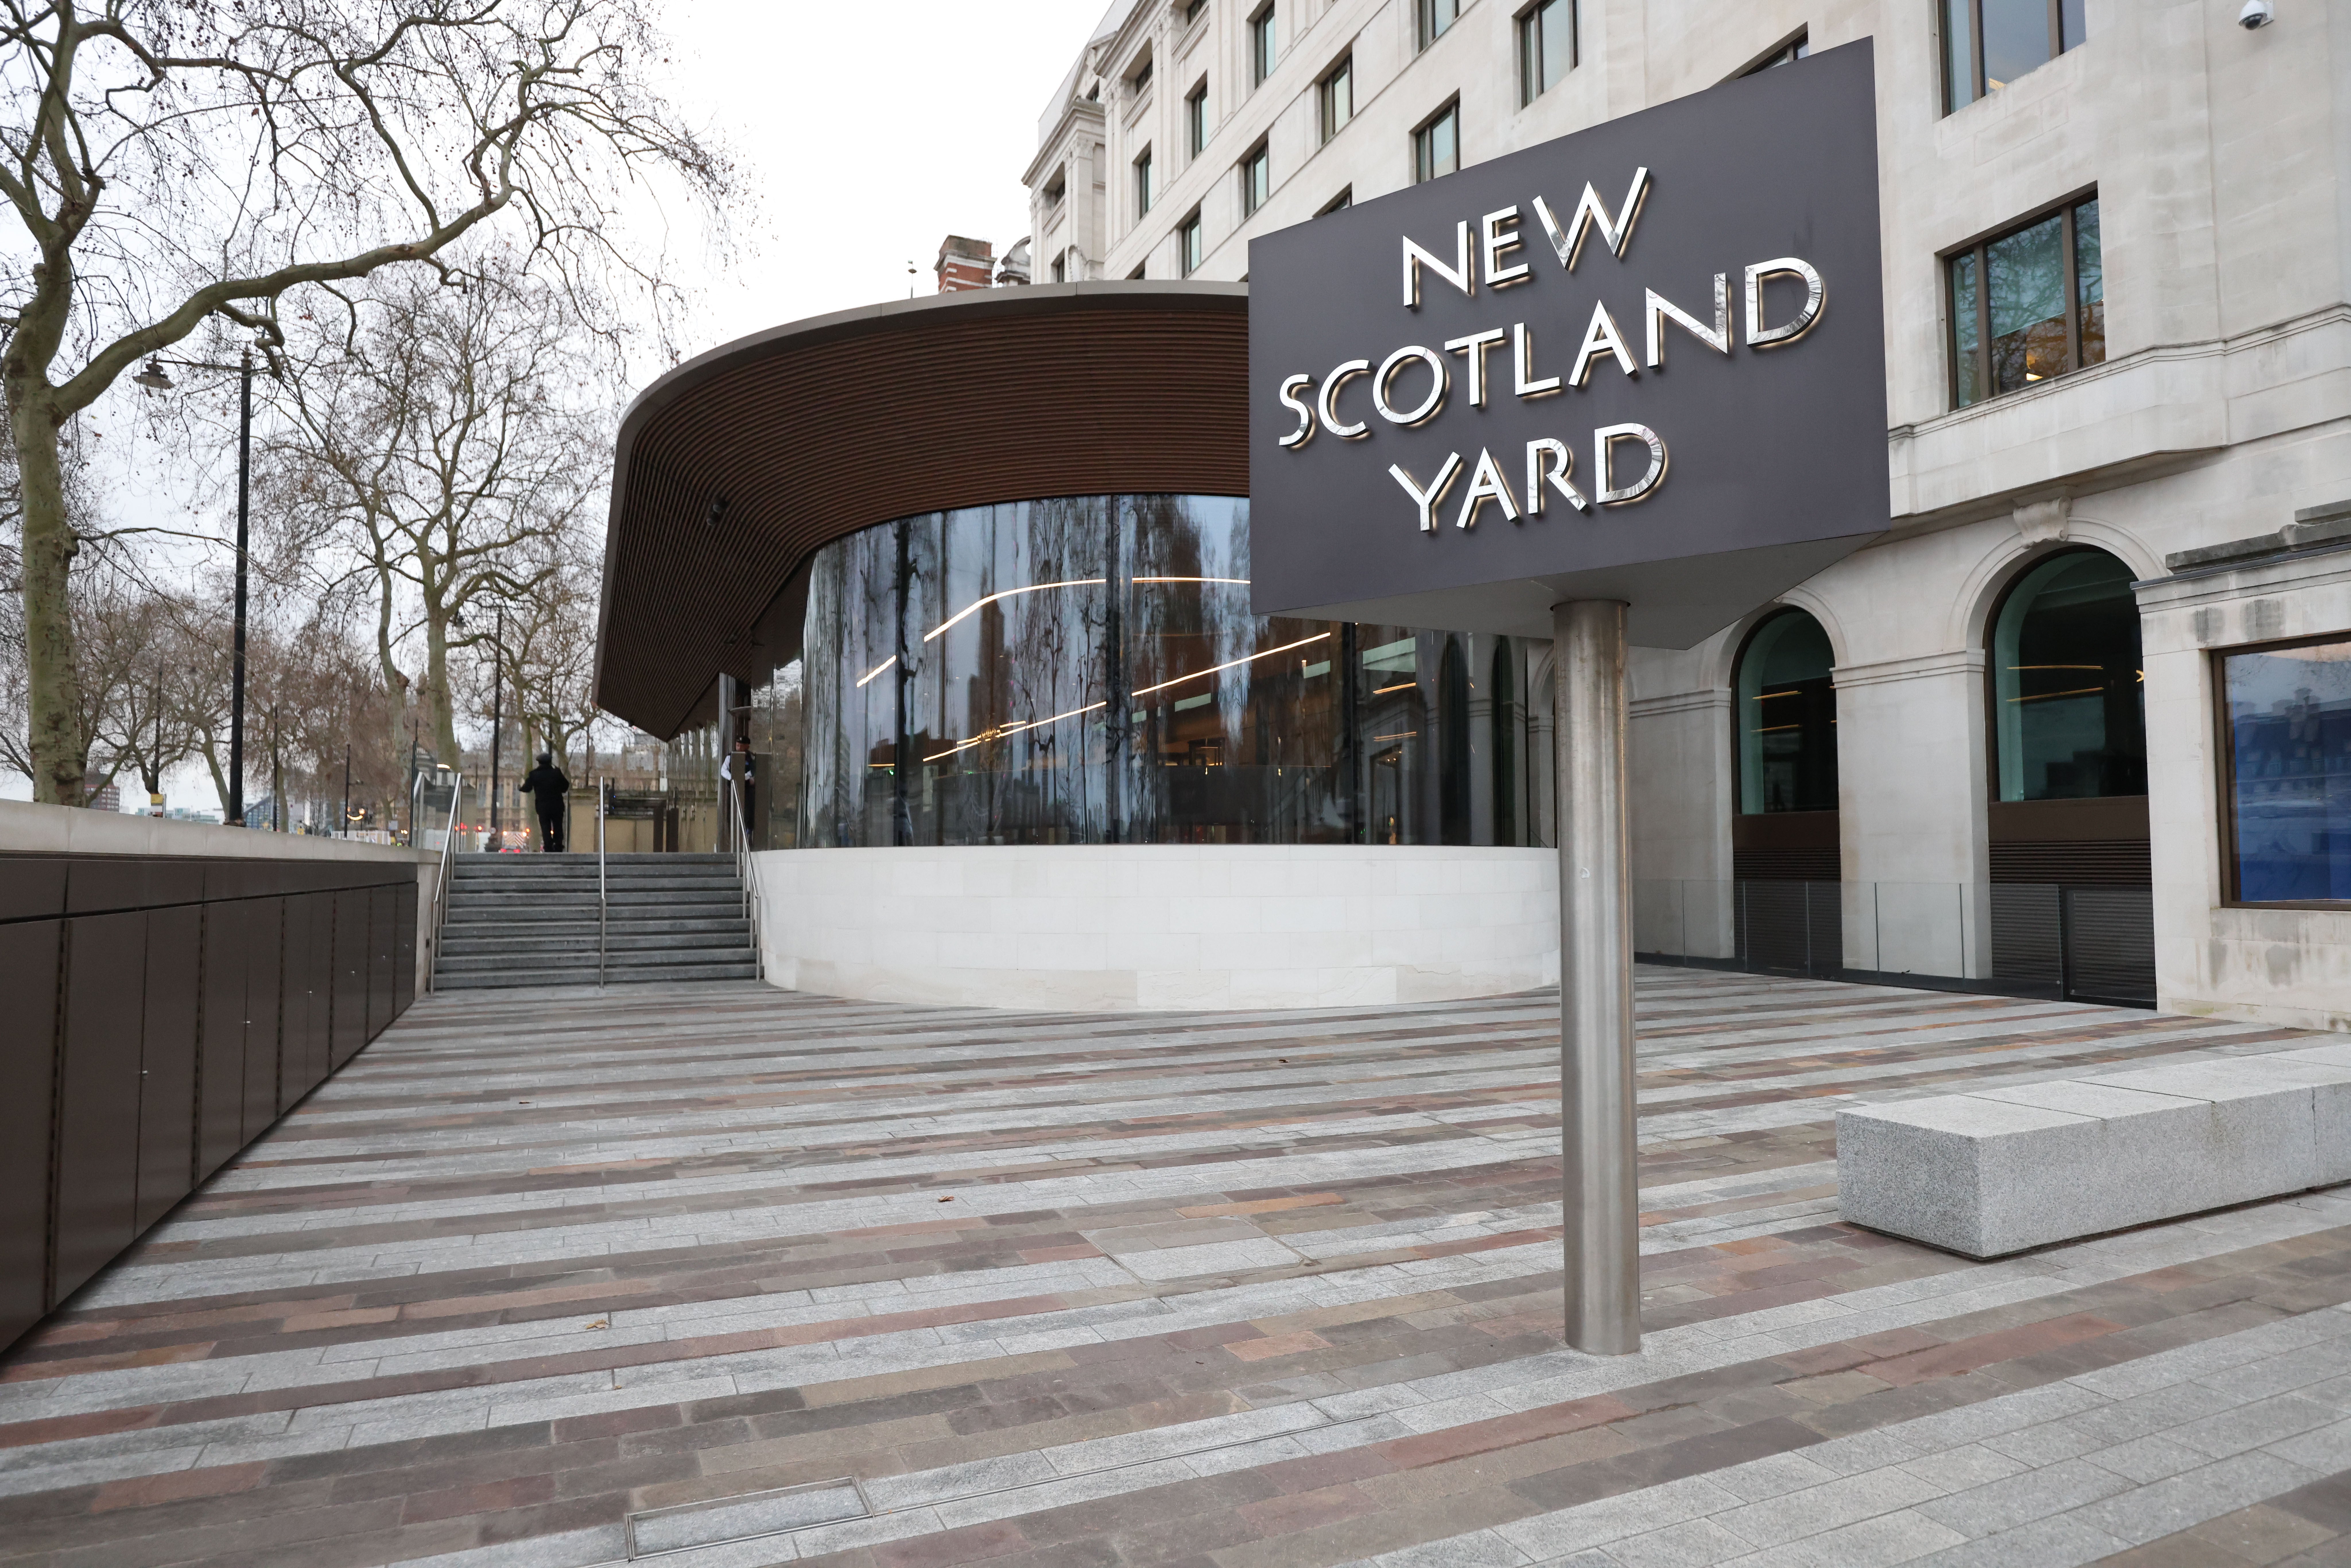 New Scotland Yard (James Manning/PA)